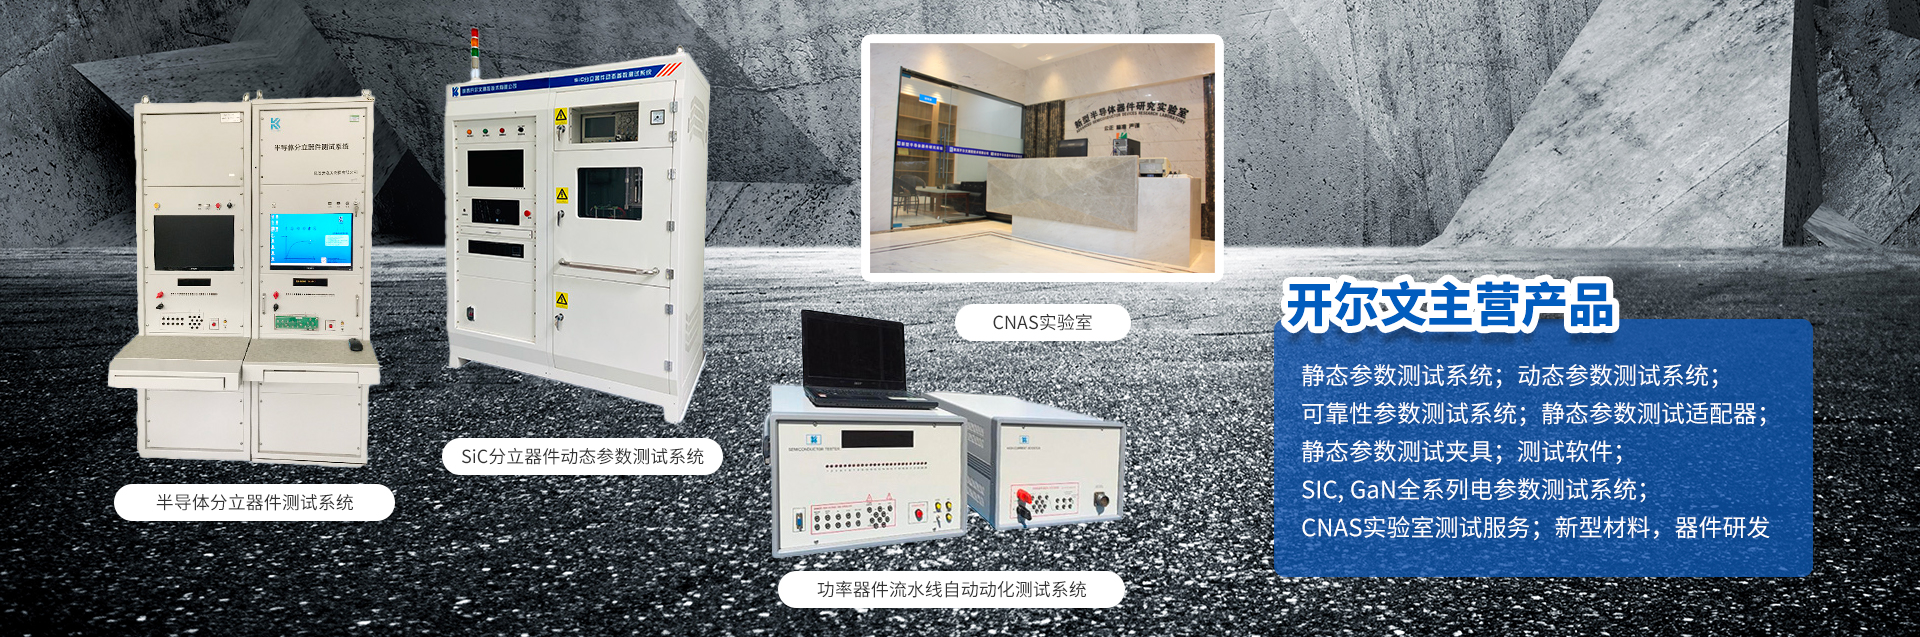 购买CNAS测试服务、三极管测试仪、雪崩测试仪、晶体管测试仪以及IGBT功率循环试验系统可以来陕西开尔文测控技术有限公司。